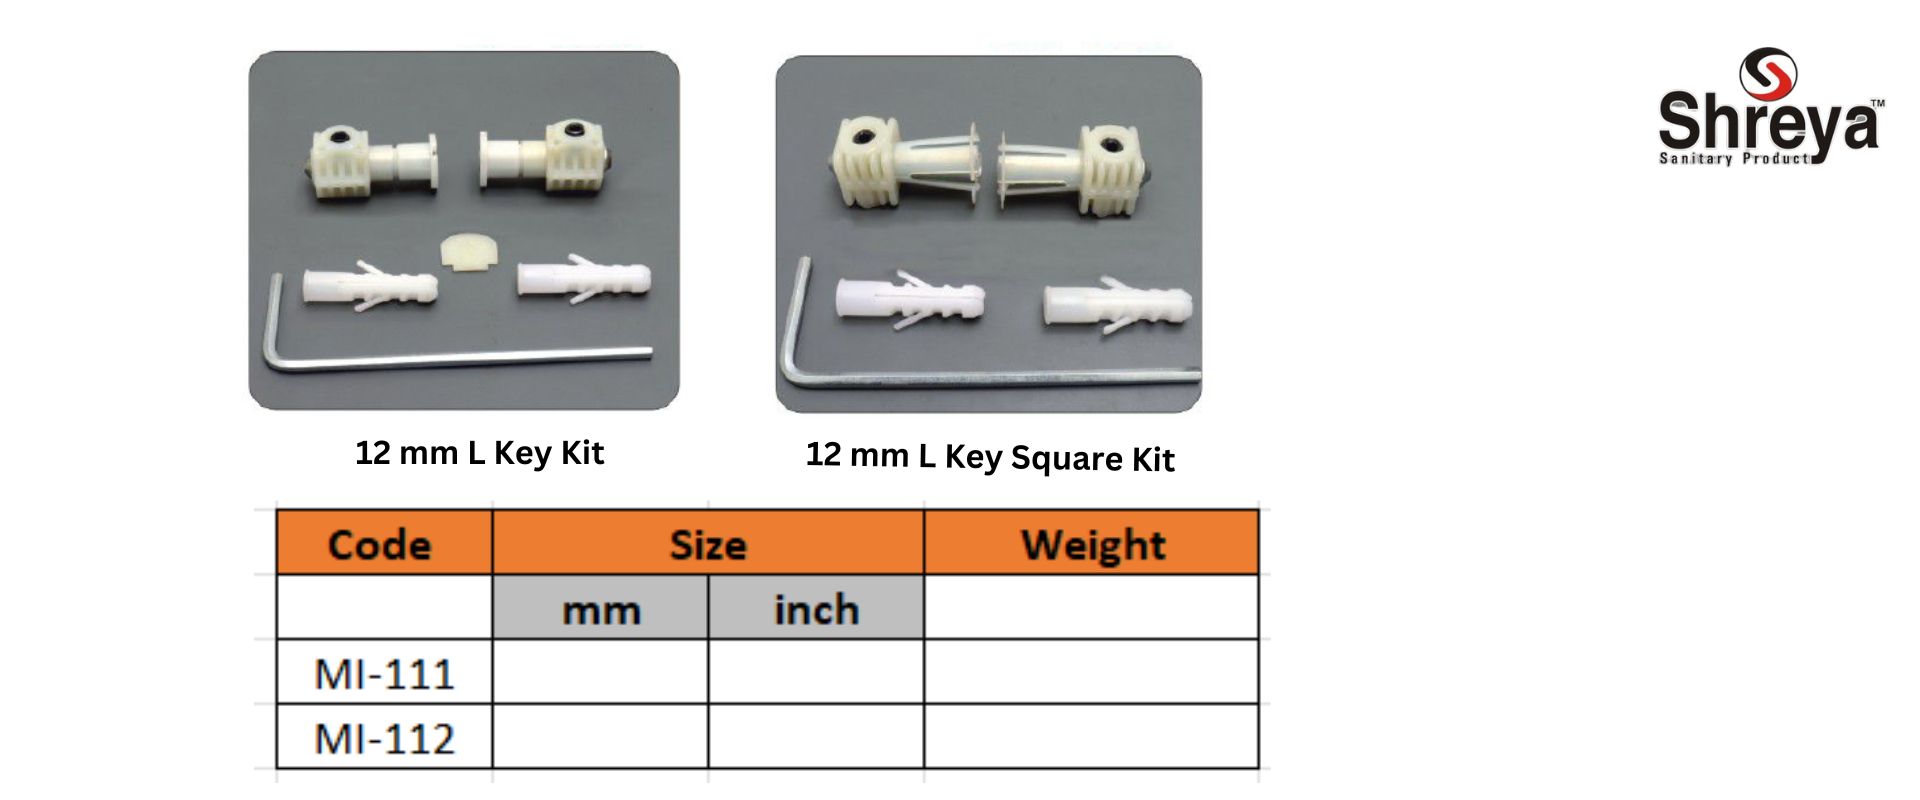 12 mm L Key Square Kit